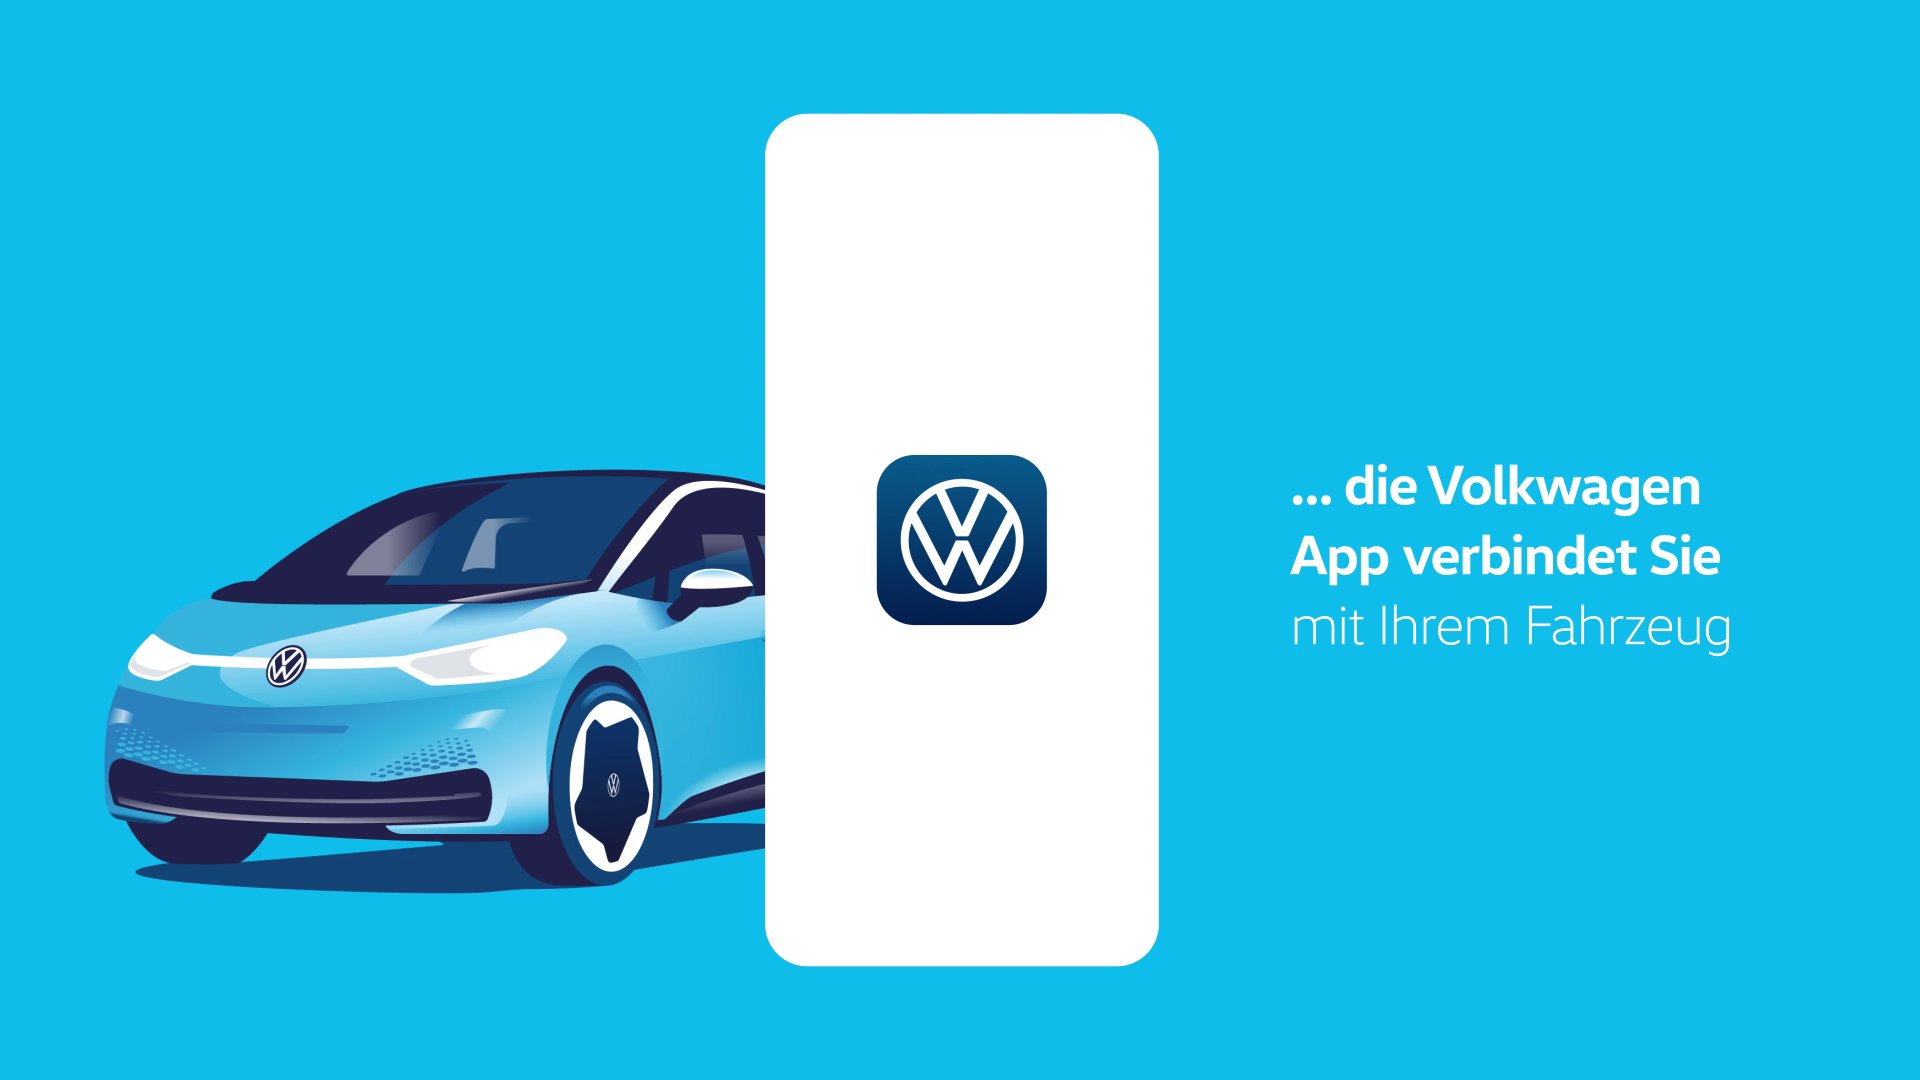 Vorschaubild bzw. Illustration für die Volkswagen App